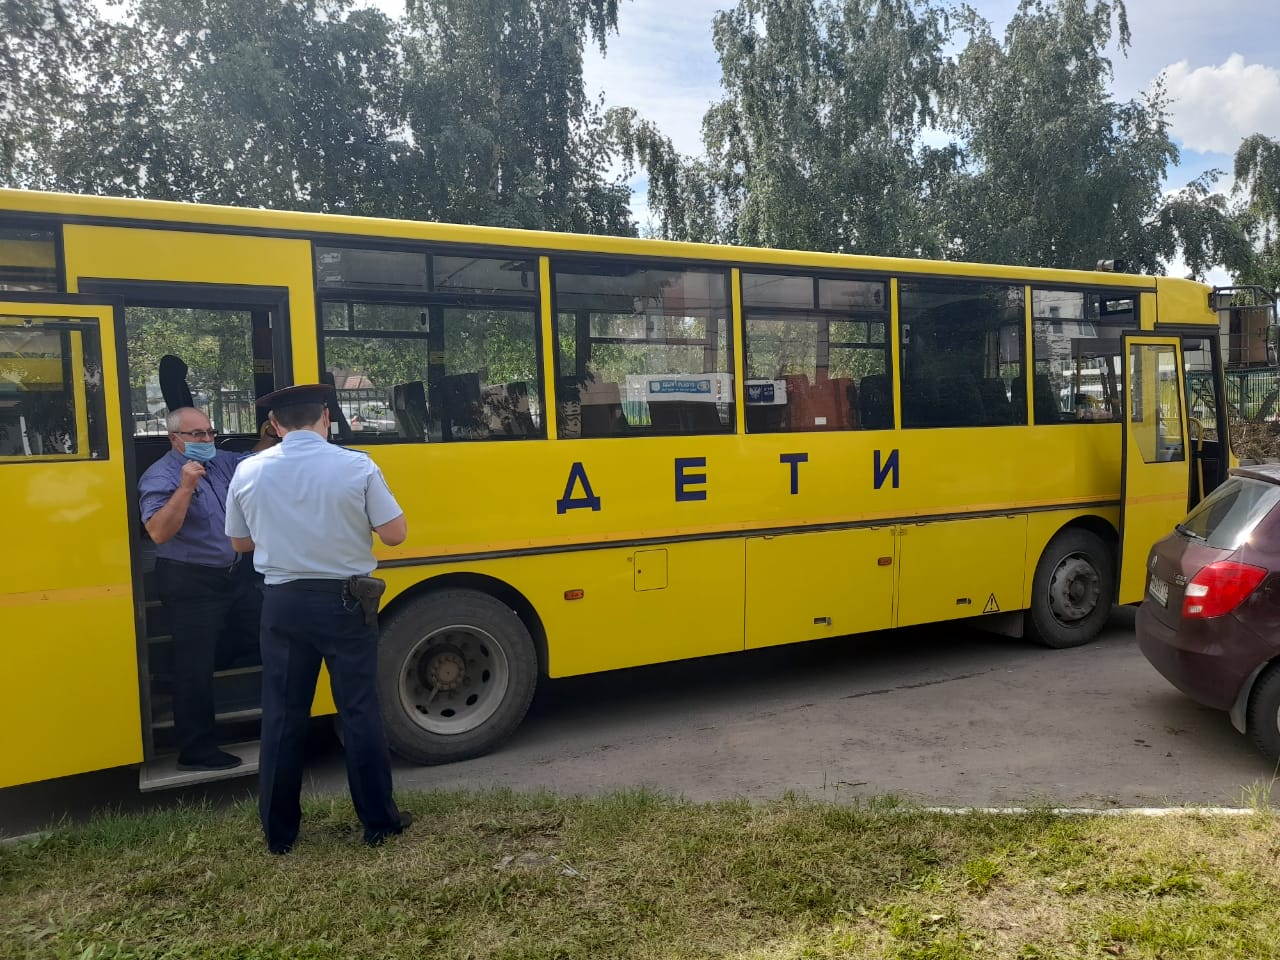  В Туле инспекторы ДПС проверили состояние школьных автобусов